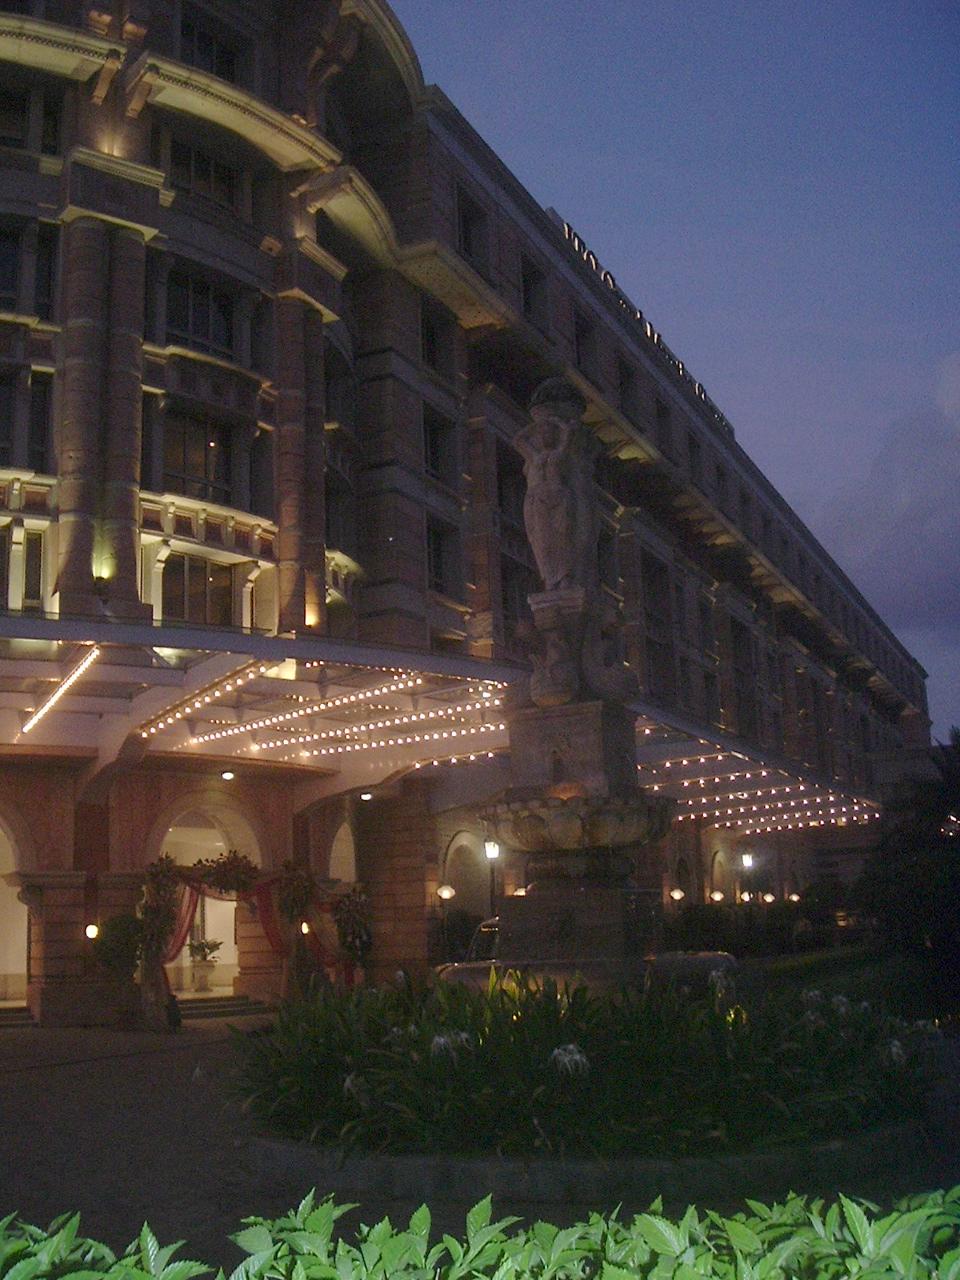 luxury hotels in mumbai, best hotels in mumbai, 5 star hotels in mumbai, oberoi mumbai, oberoi hotel mumbai, the oberoi mumbai, oberoi towers mumbai, oberoi towers mumbai, oberoi trident nariman point, hotels in mumbai, oberoi hotel mumbai nariman point, oberoi hotel mumbai information, 5 star hotels in mumbai, oberoi sheraton mumbai, taj oberoi mumbai, the oberoi mumbai mumbai maharashtra india, www oberoihotels com mumbai, oberoi bombay, best hotels in india, oberoi hotel mumbai booking, oberoi trident mumbai, oberoi sheraton hotel mumbai, oberoi hotel mumbai bkc, oberoi hotels & resorts mumbai, oberoi hotel mumbai address, the oberoi trident mumbai, oberoi hotel nariman point, oberoi grand mumbai, oberoi hotel bombay, the oberoi hotel mumbai, which is the biggest hotel in india, five star hotels in mumbai, top hotels in mumbai, 7 star hotel in mumbai, oberoi hotels list, oberoi bkc, biggest hotel in india, oberoi resorts in india, list of 7 star hotels in mumbai, the oberoi mumbai contact number, international hotels in india, oberoi hotel mumbai wiki, top 7 star hotels in mumbai, oberoi mumbai address, belvedere oberoi mumbai, trident hotel oberoi nairman point mumbai, top 10 5 star hotels in mumbai, top 10 five star hotels in mumbai, top 7 star hotels in mumbai, best hotels in mumbai, luxury hotels in mumbai